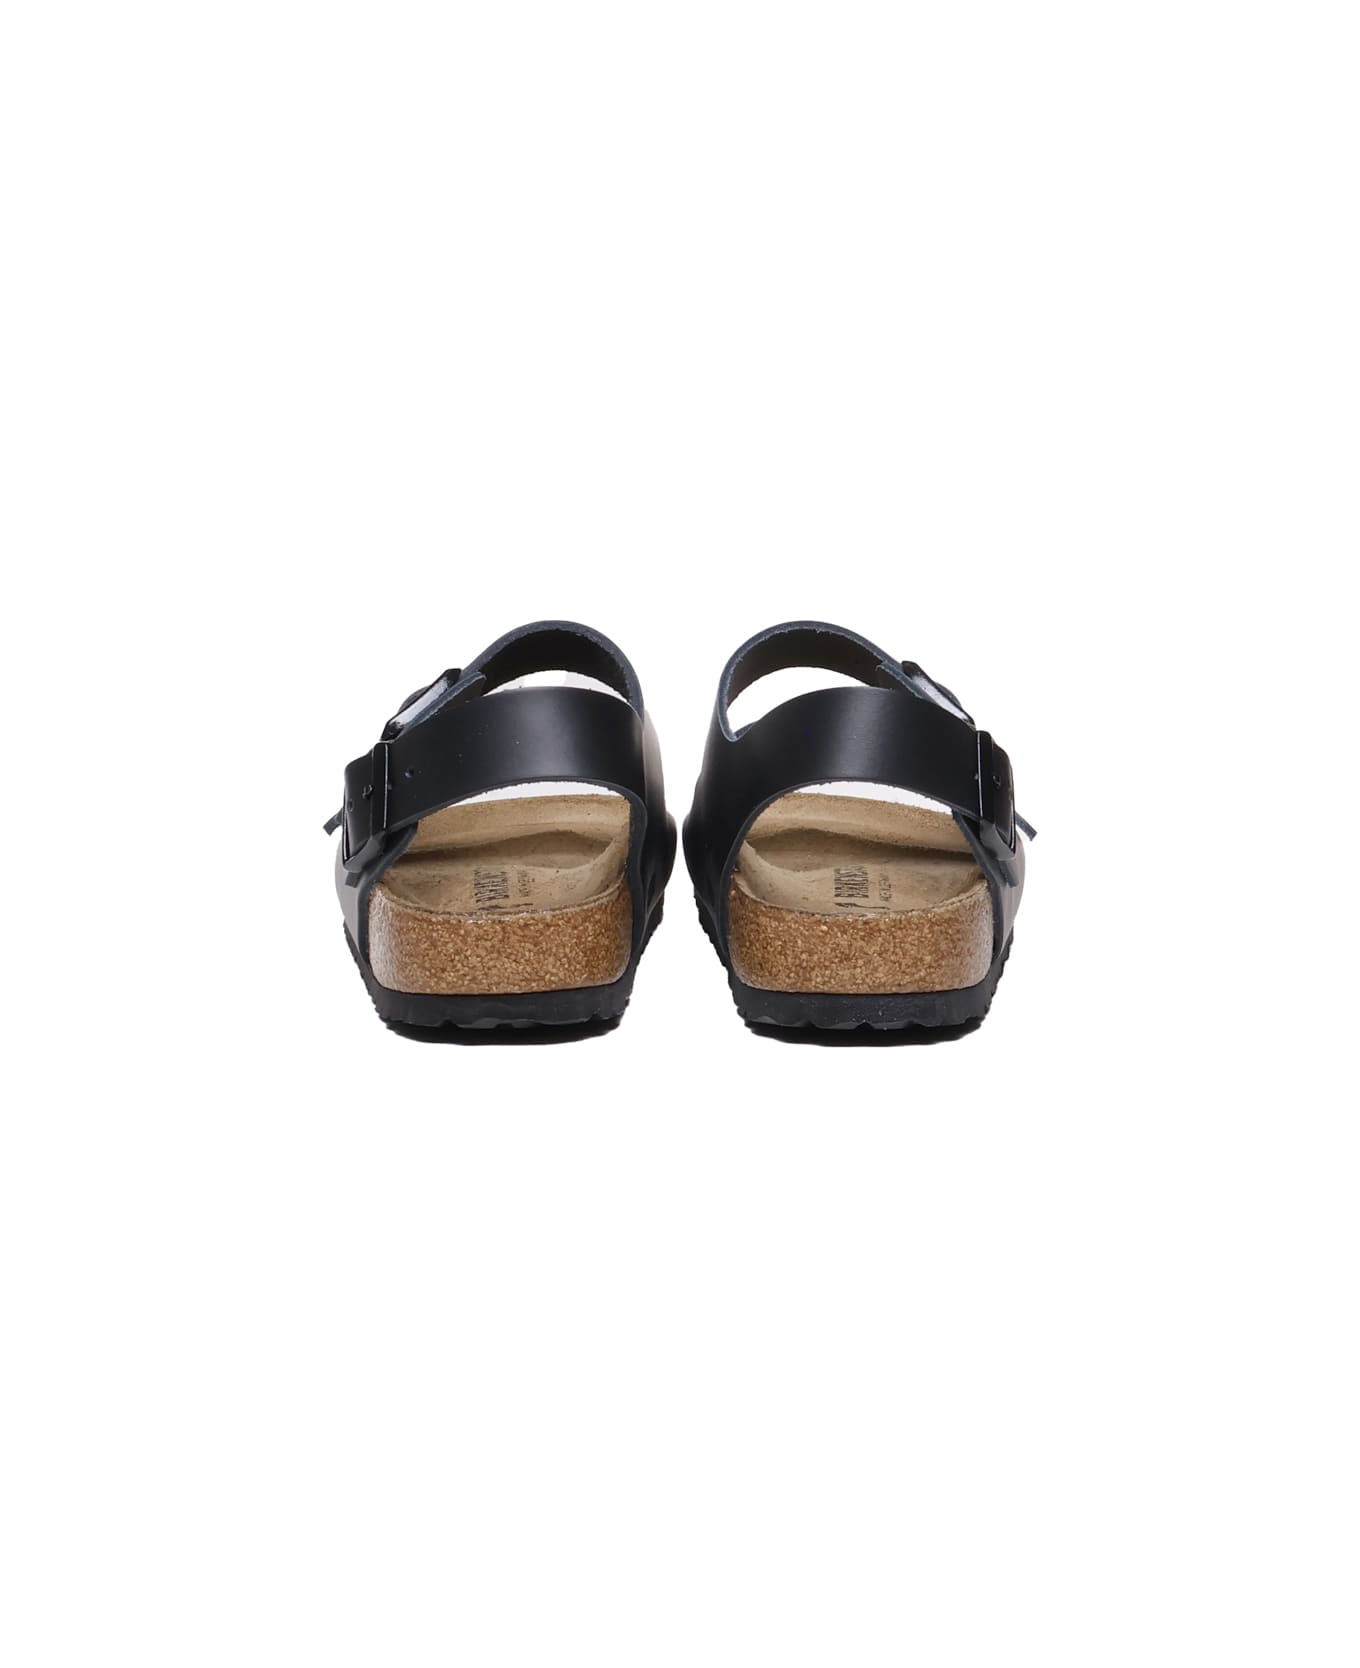 Birkenstock Milan Bs Sandals - Black